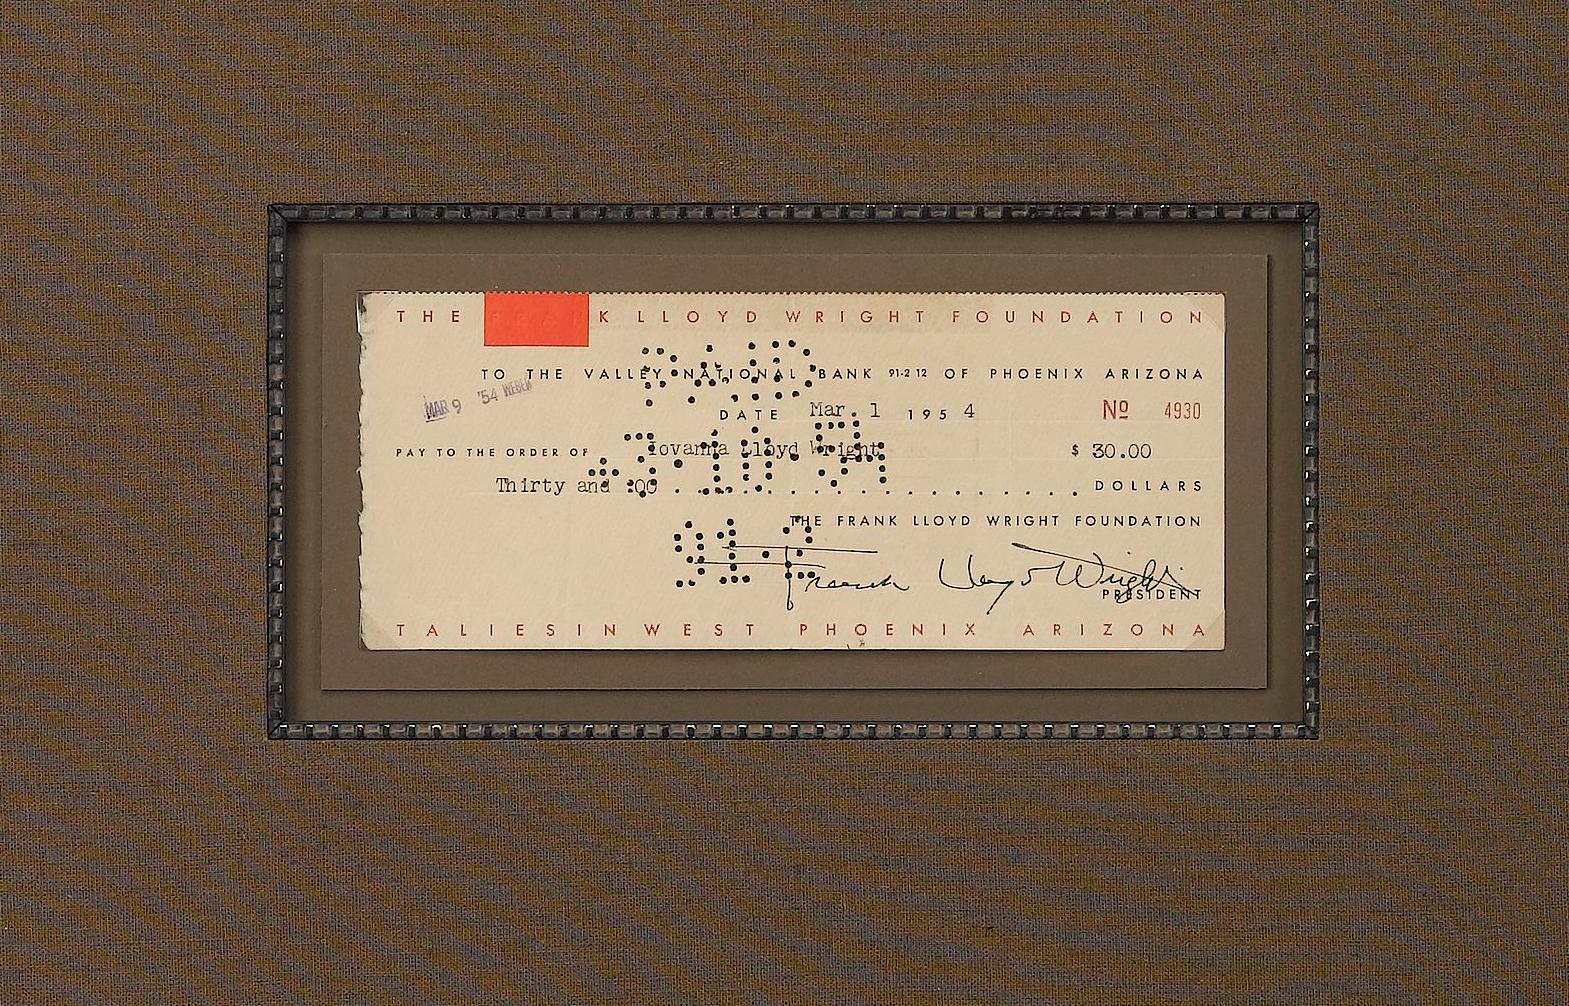 Voici un chèque bancaire original de la Frank Lloyd Wright Foundation, signé par le célèbre architecte Frank Lloyd Wright. Le chèque est daté du 1er mars 1954, à l'ordre de Lloyds Wright, pour un montant de 30,00 $. Fantastique pièce d'association,